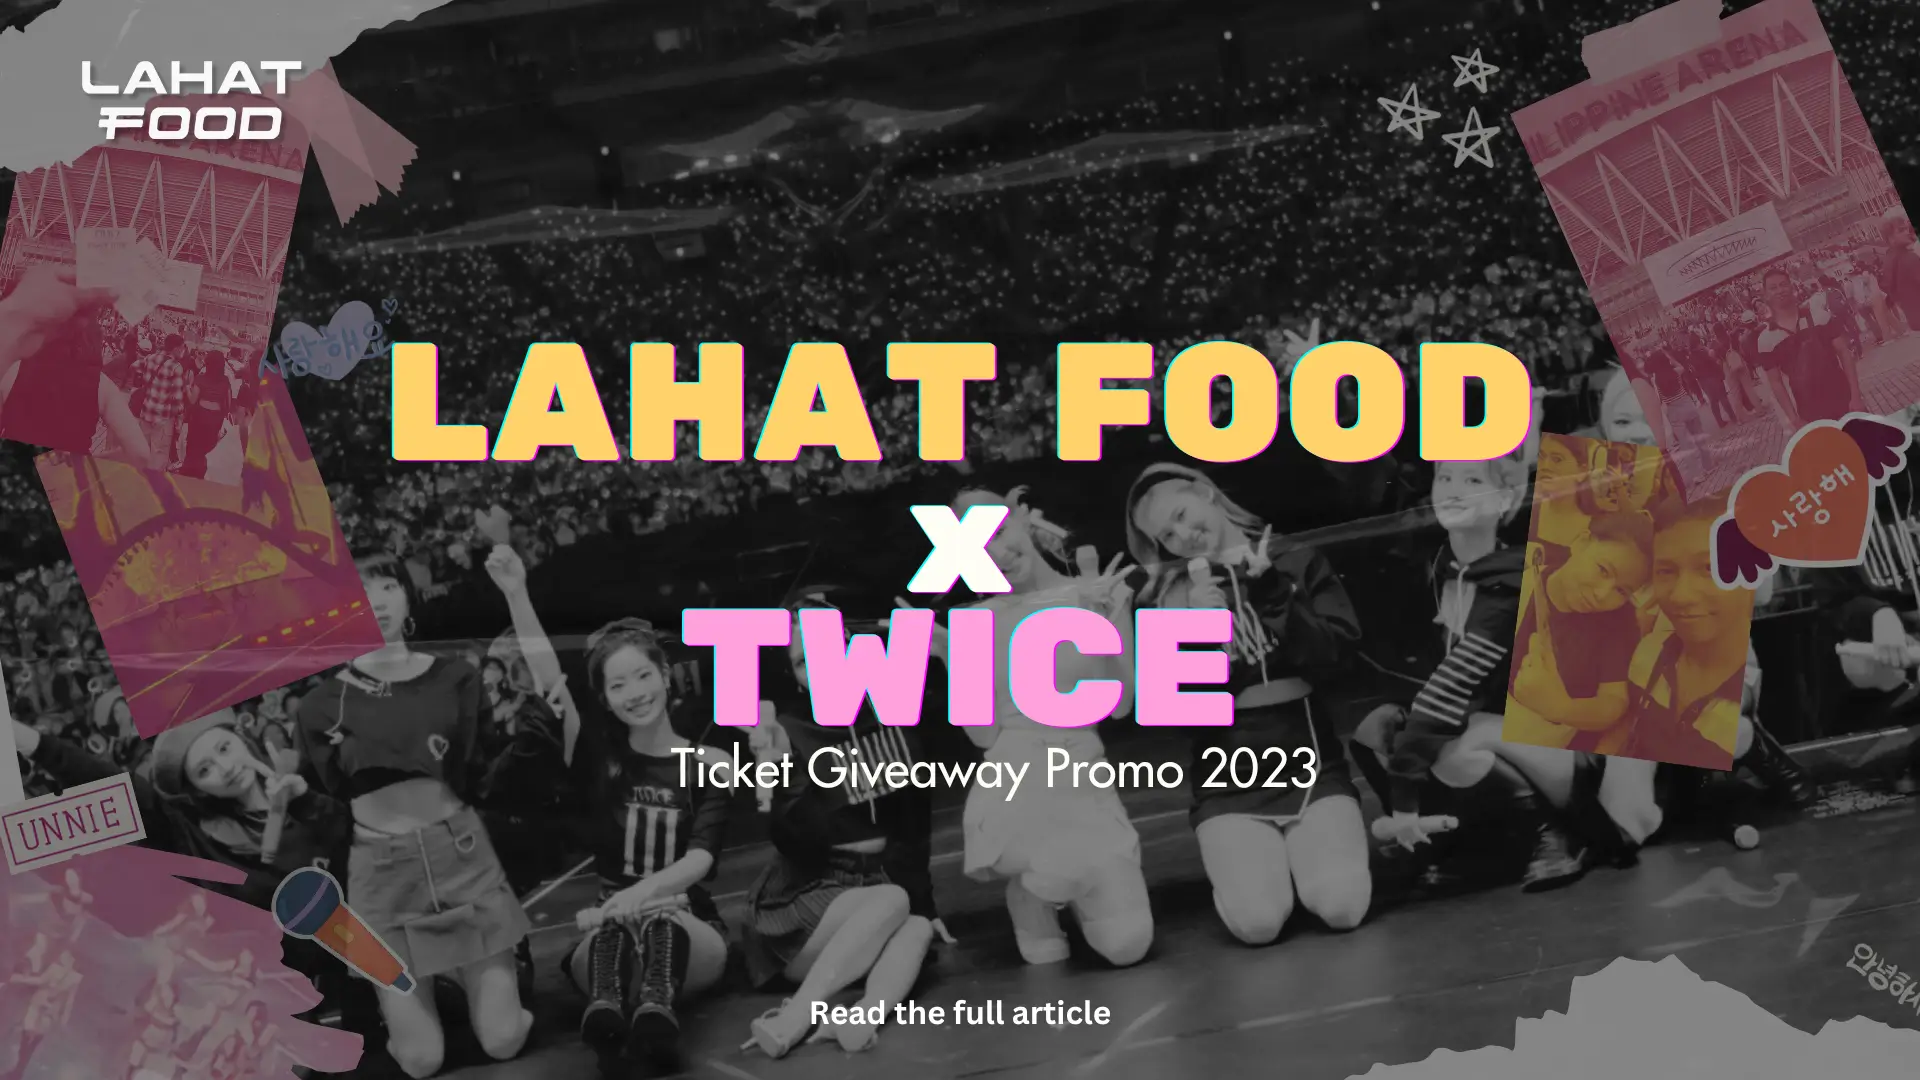 Twice x Lahat Food